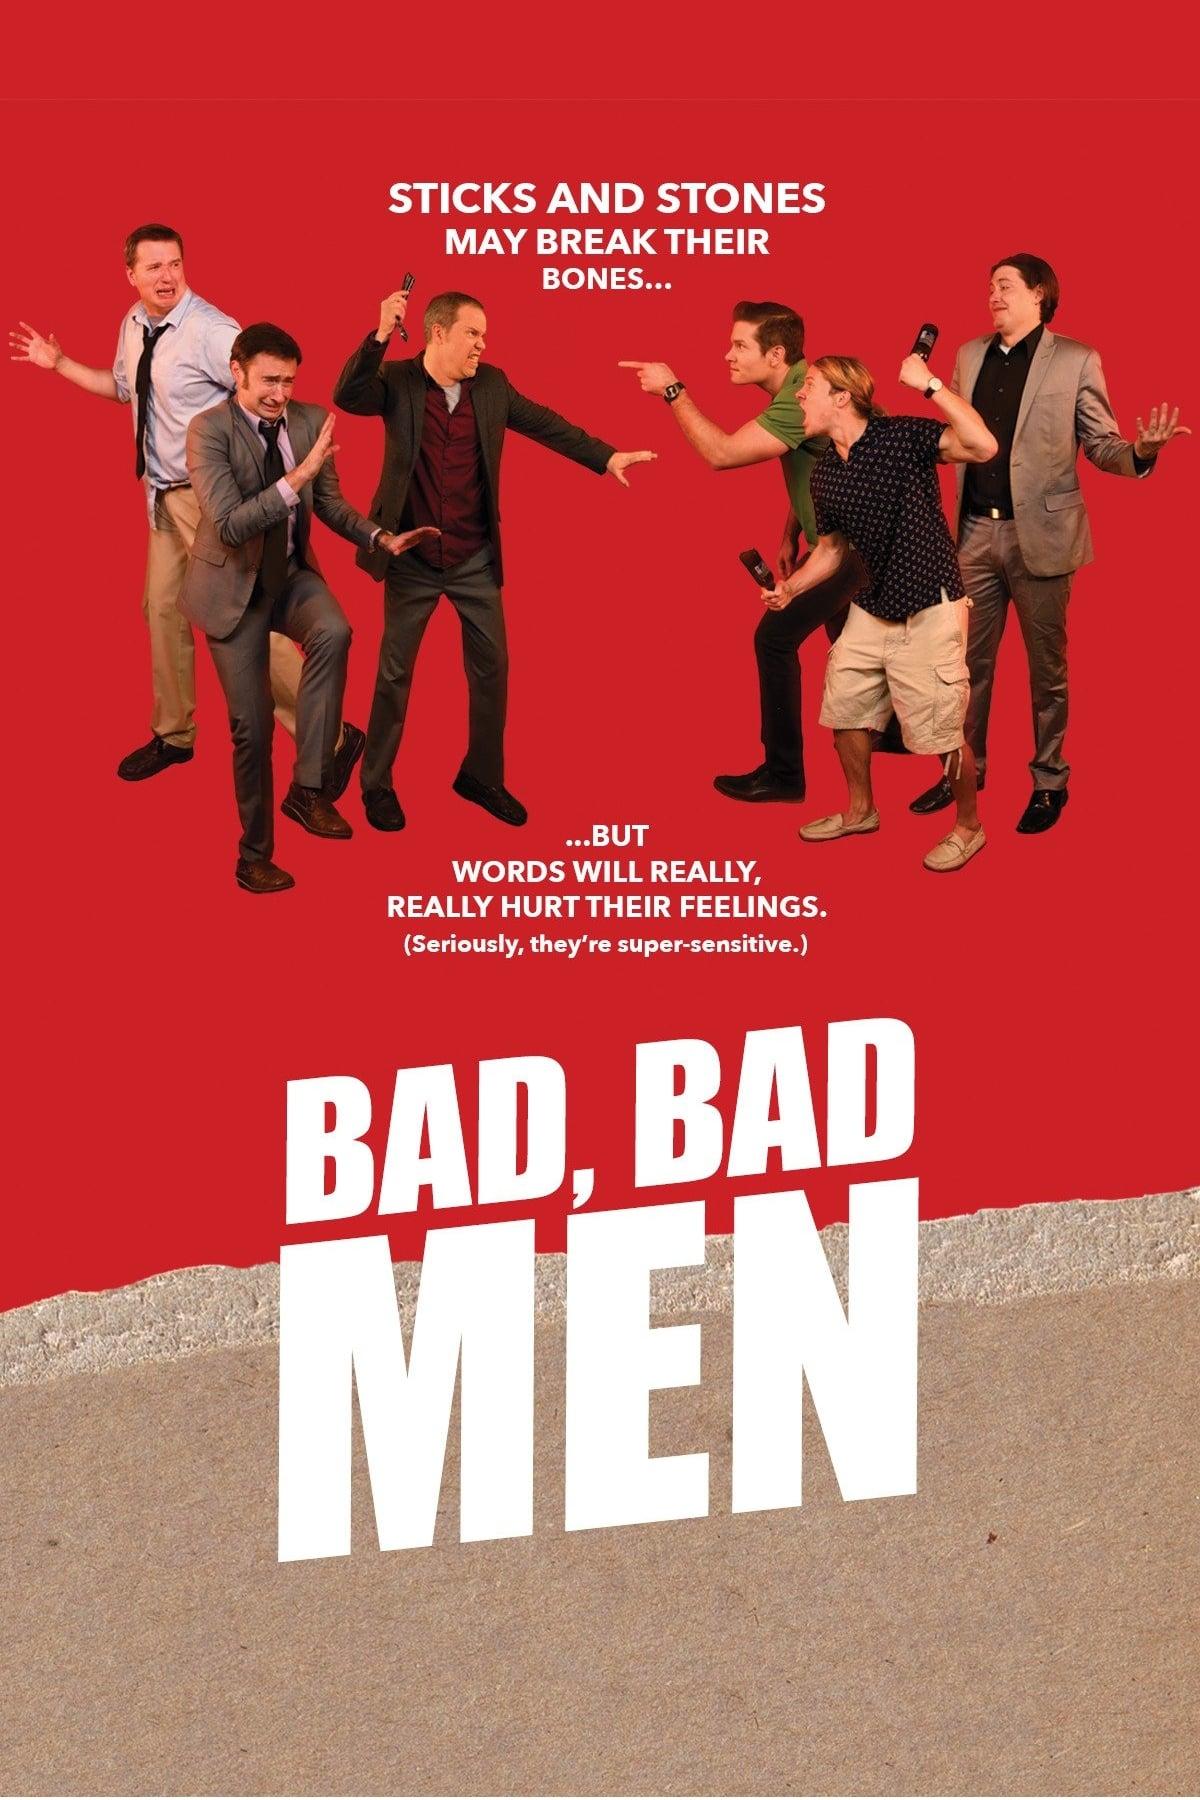 Bad, Bad Men poster